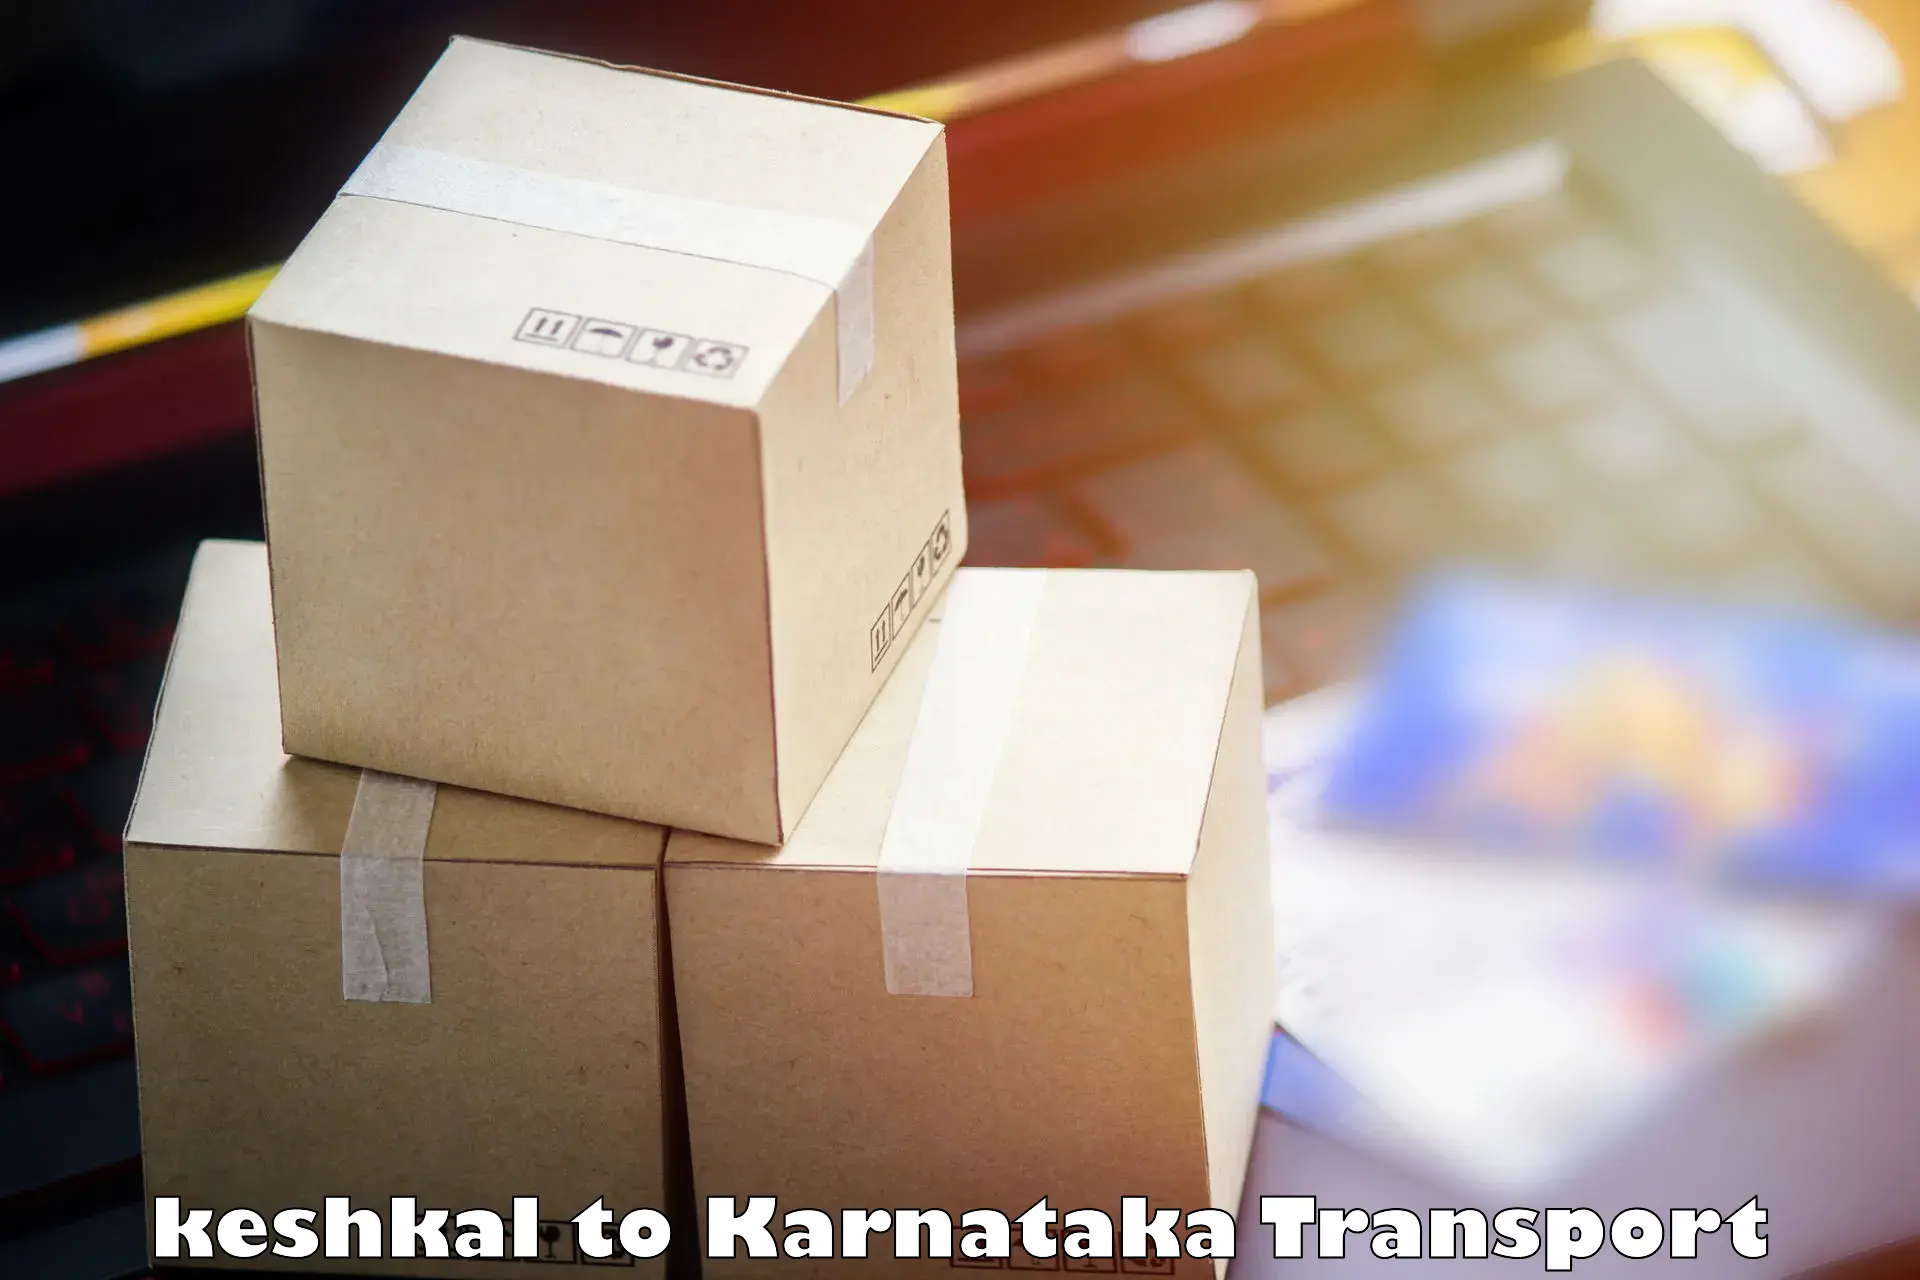 Cargo transport services keshkal to Tumkur